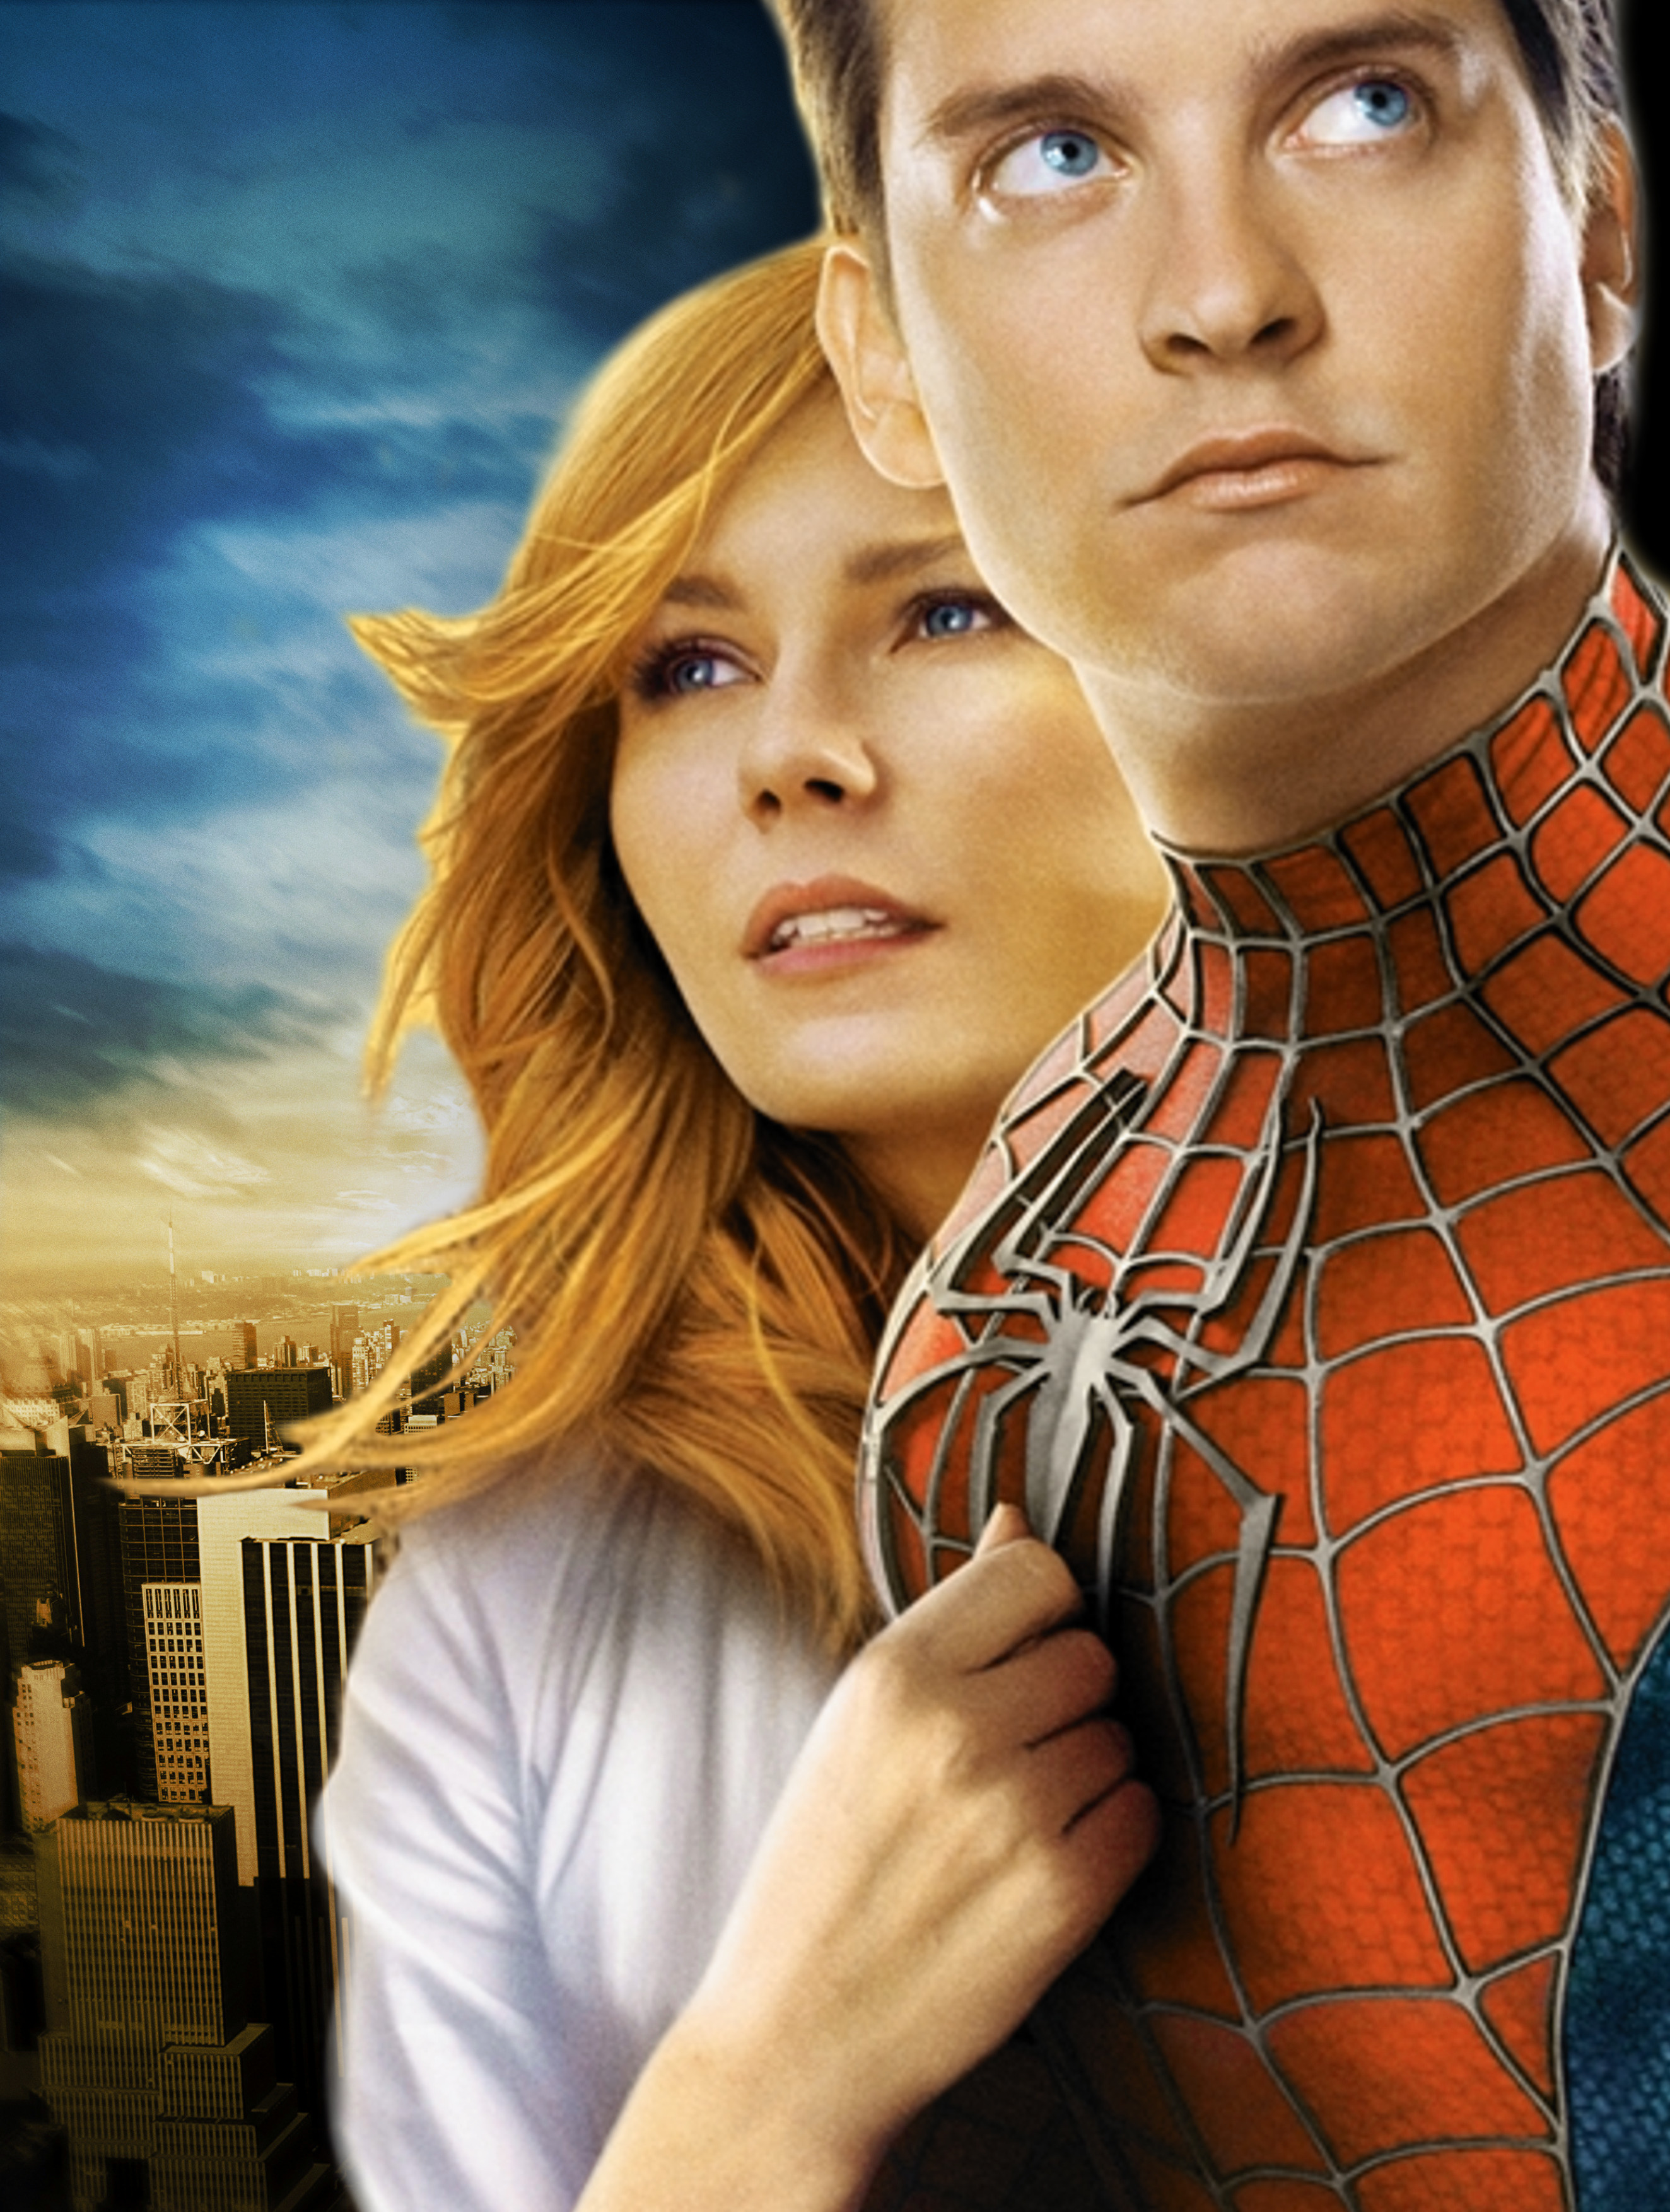 Spider-Man cast | Spider-Man Films Wiki Fandom